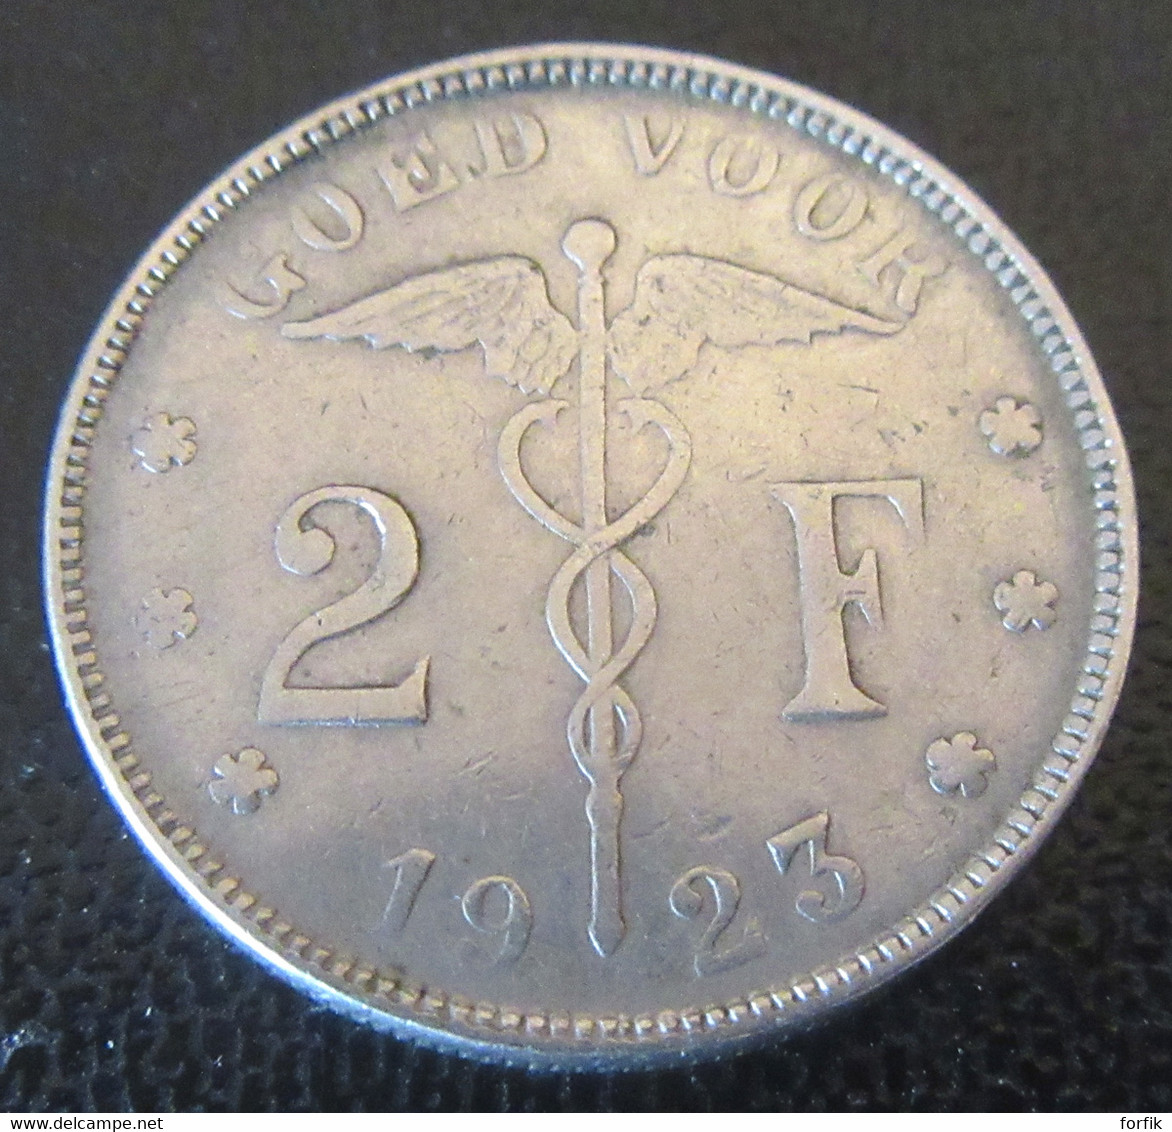 Belgique - Monnaie Bon Pour 2 Francs (Goed Voor 2 F) 1923 - Légende En Néerlandais - 2 Frank